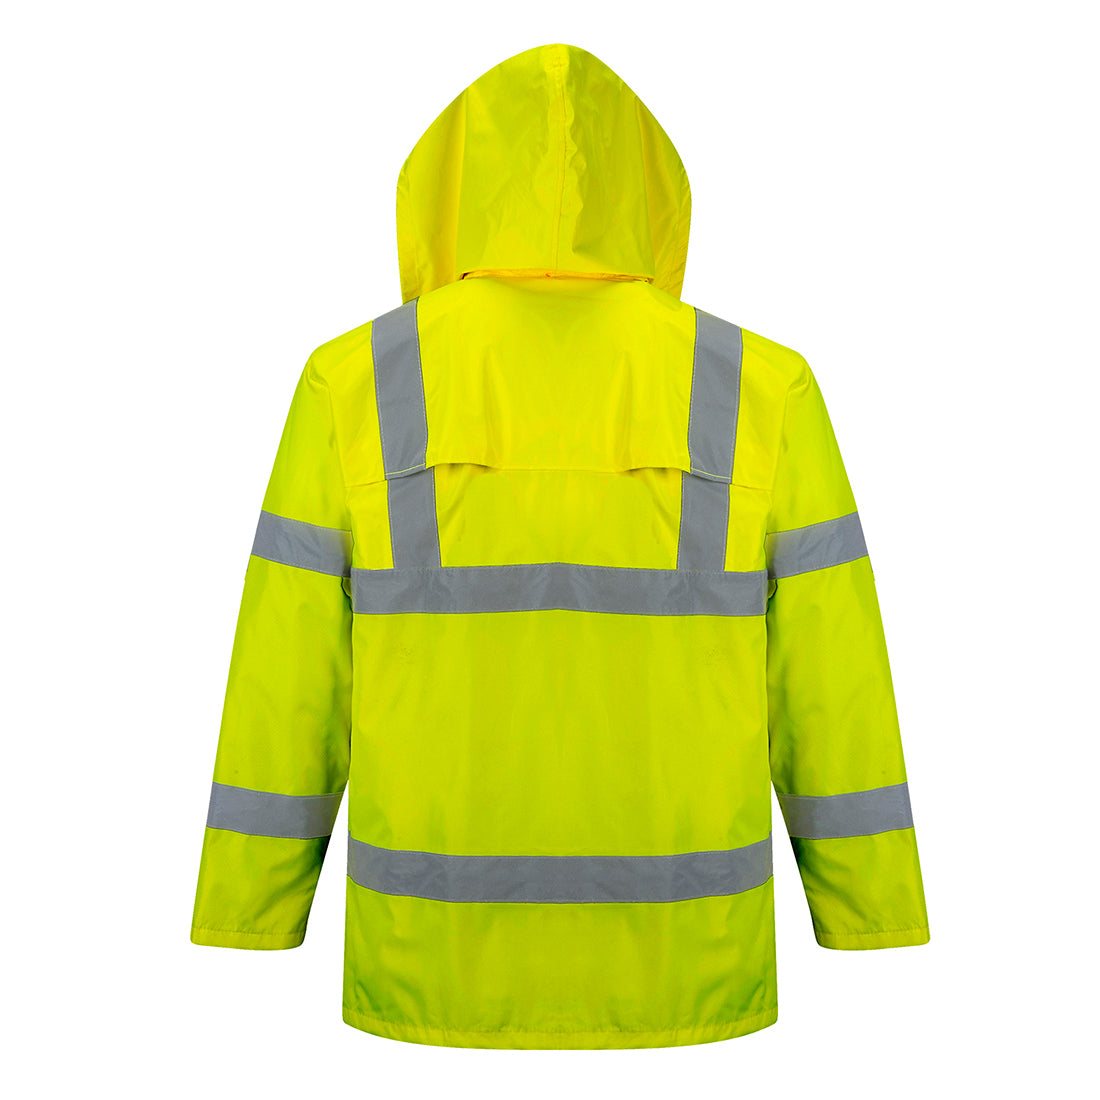 Portwest Hi-Vis Rain Jacket #colour_yellow